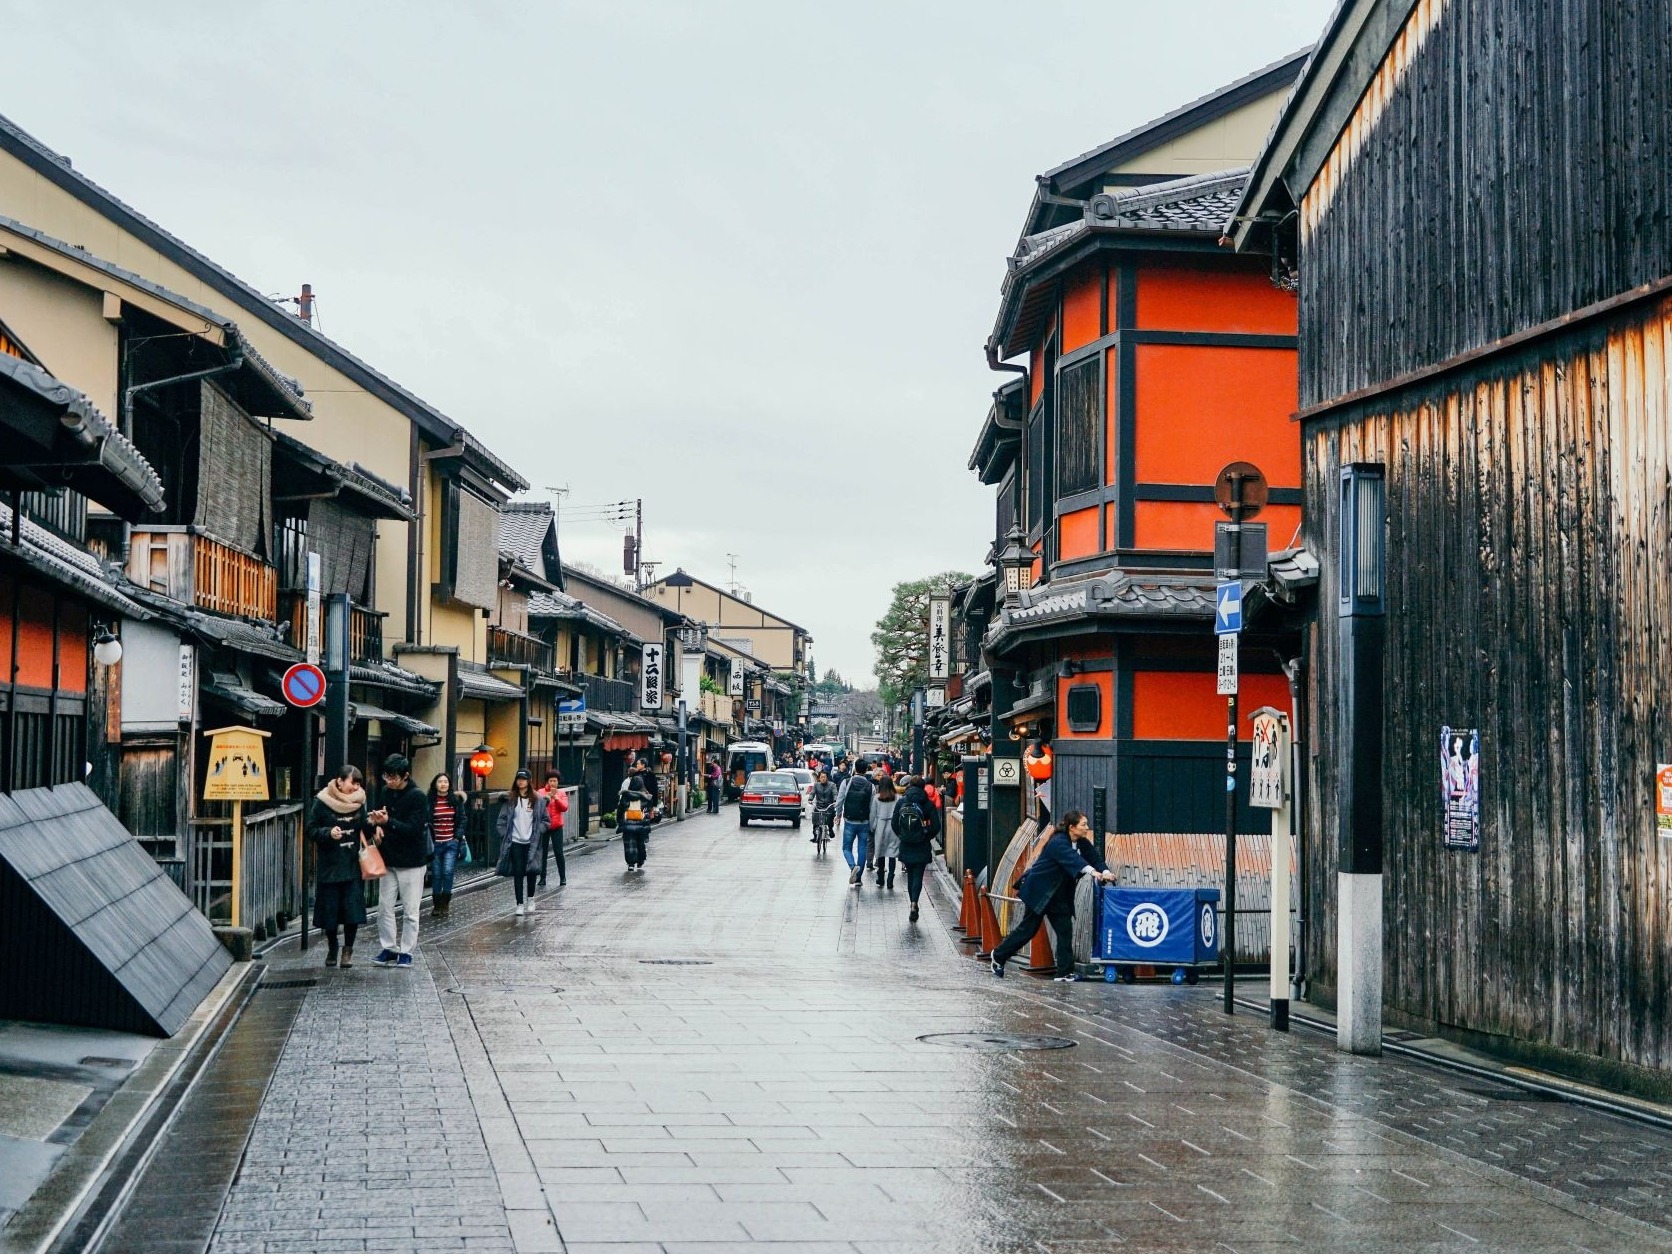 疫情影响下 日本旅游优惠活动一波三折